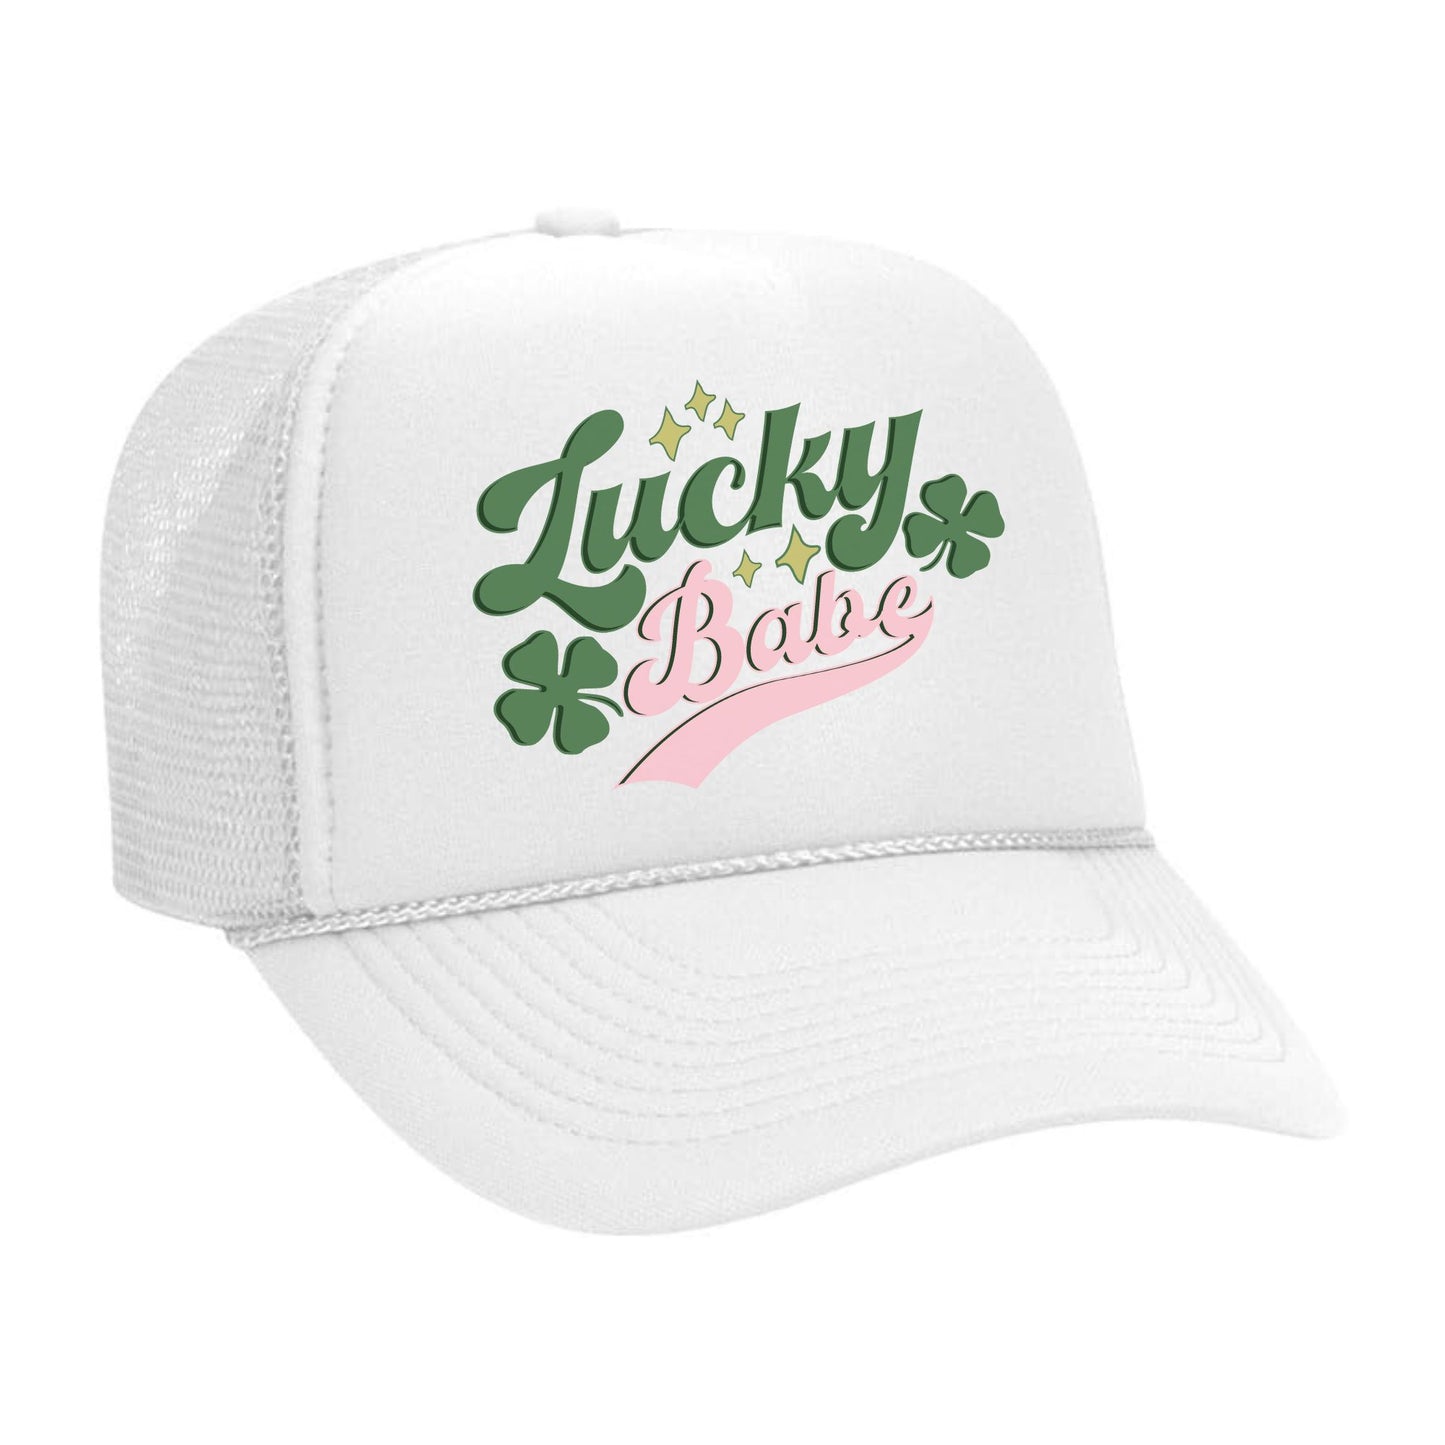 LUCKY Trucker Hats